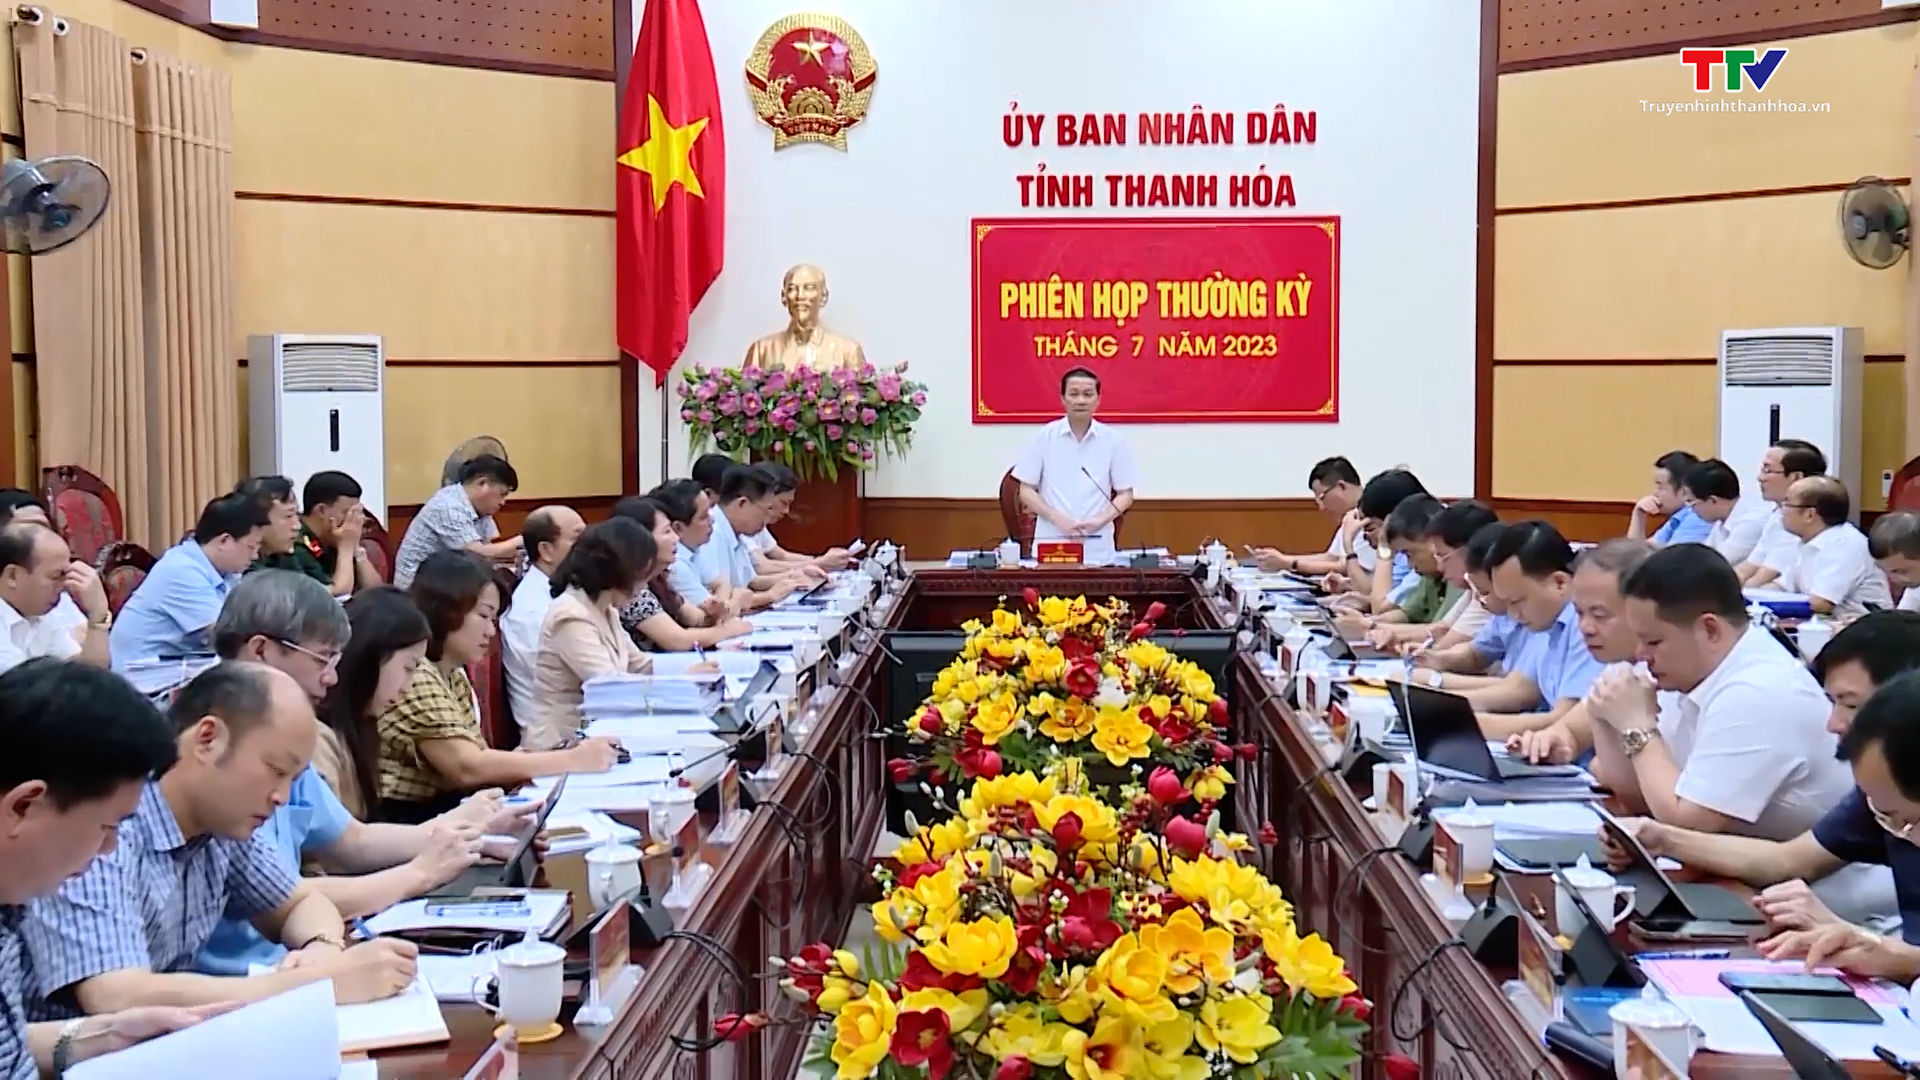 Phiên họp thường kỳ Ủy ban nhân dân tỉnh Thanh Hóa tháng 7/2023 - Ảnh 4.